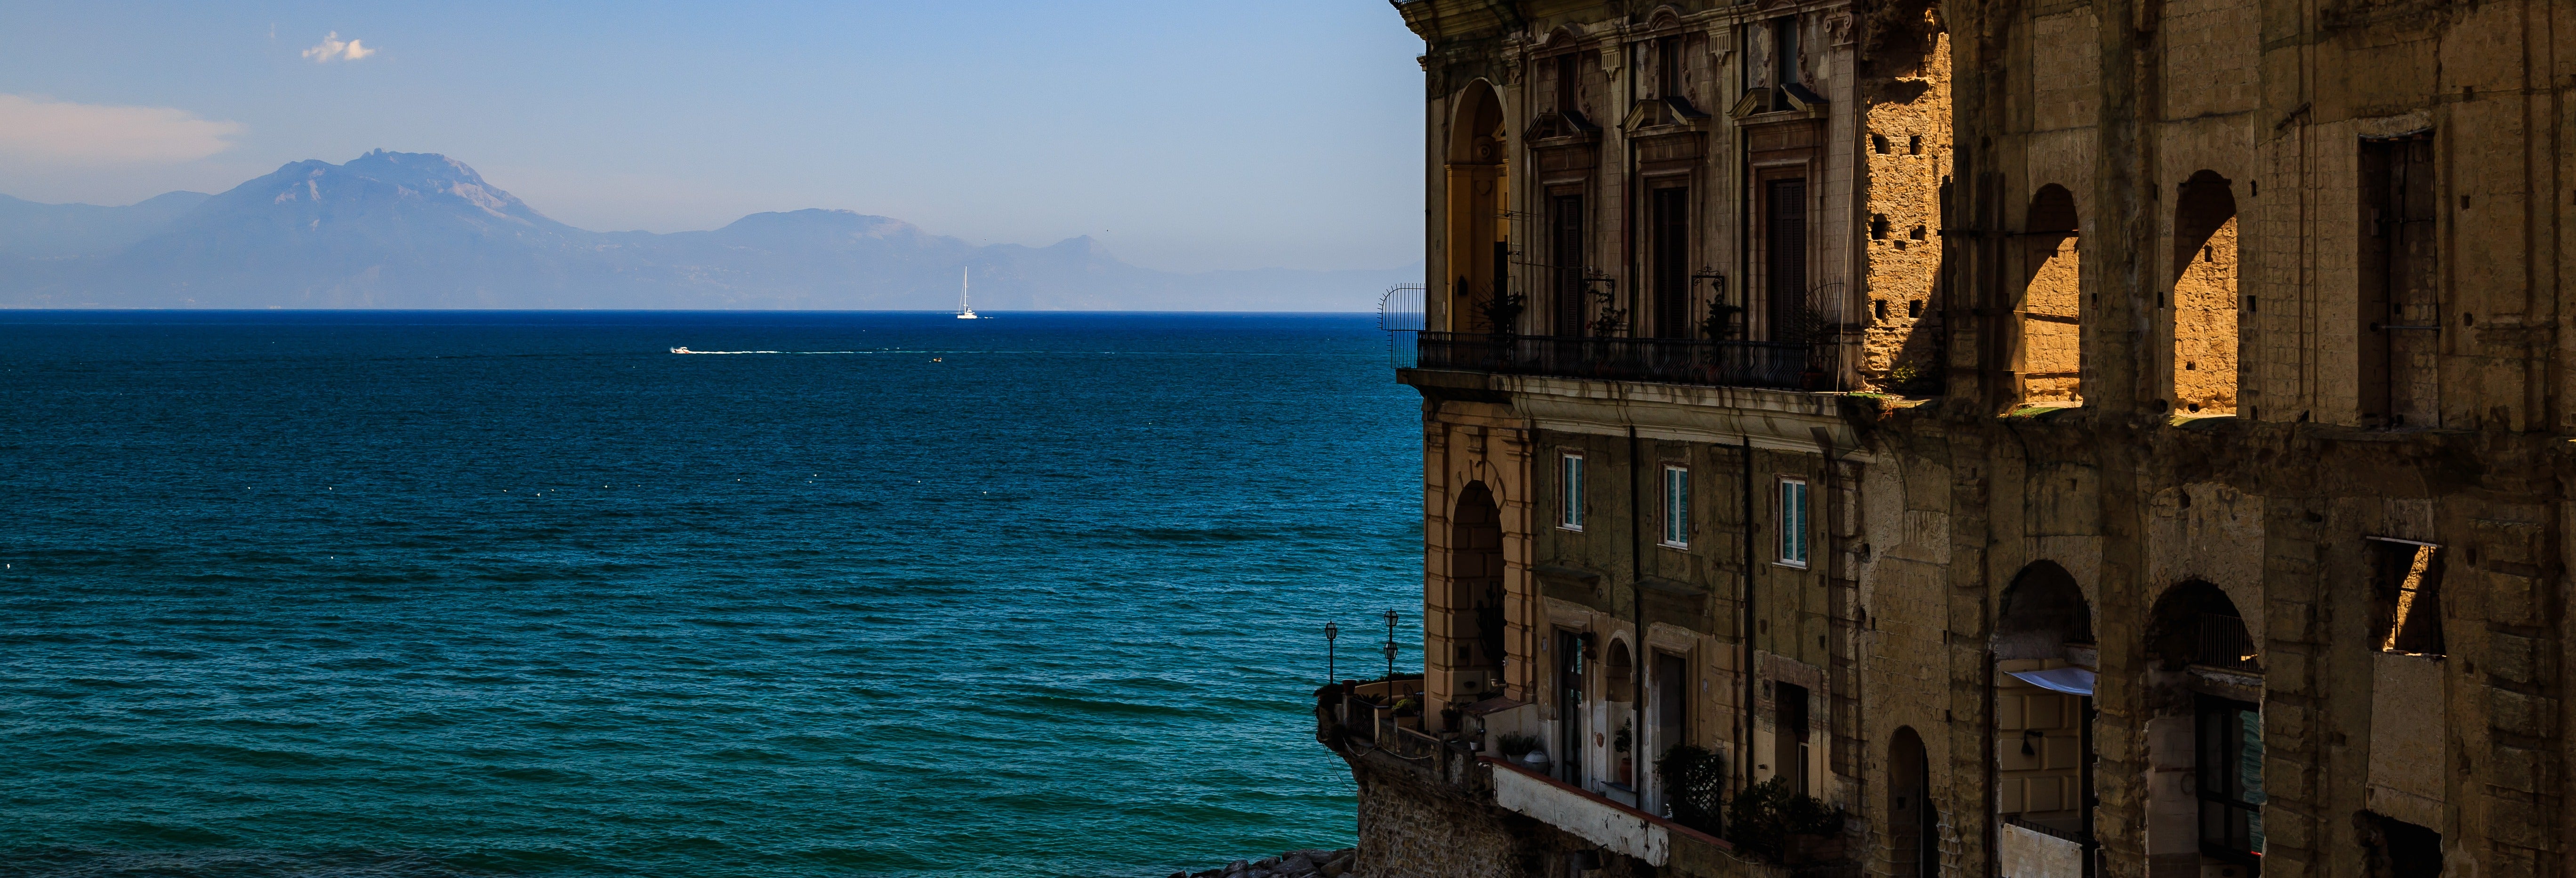 Balade en bateau dans la baie de Naples